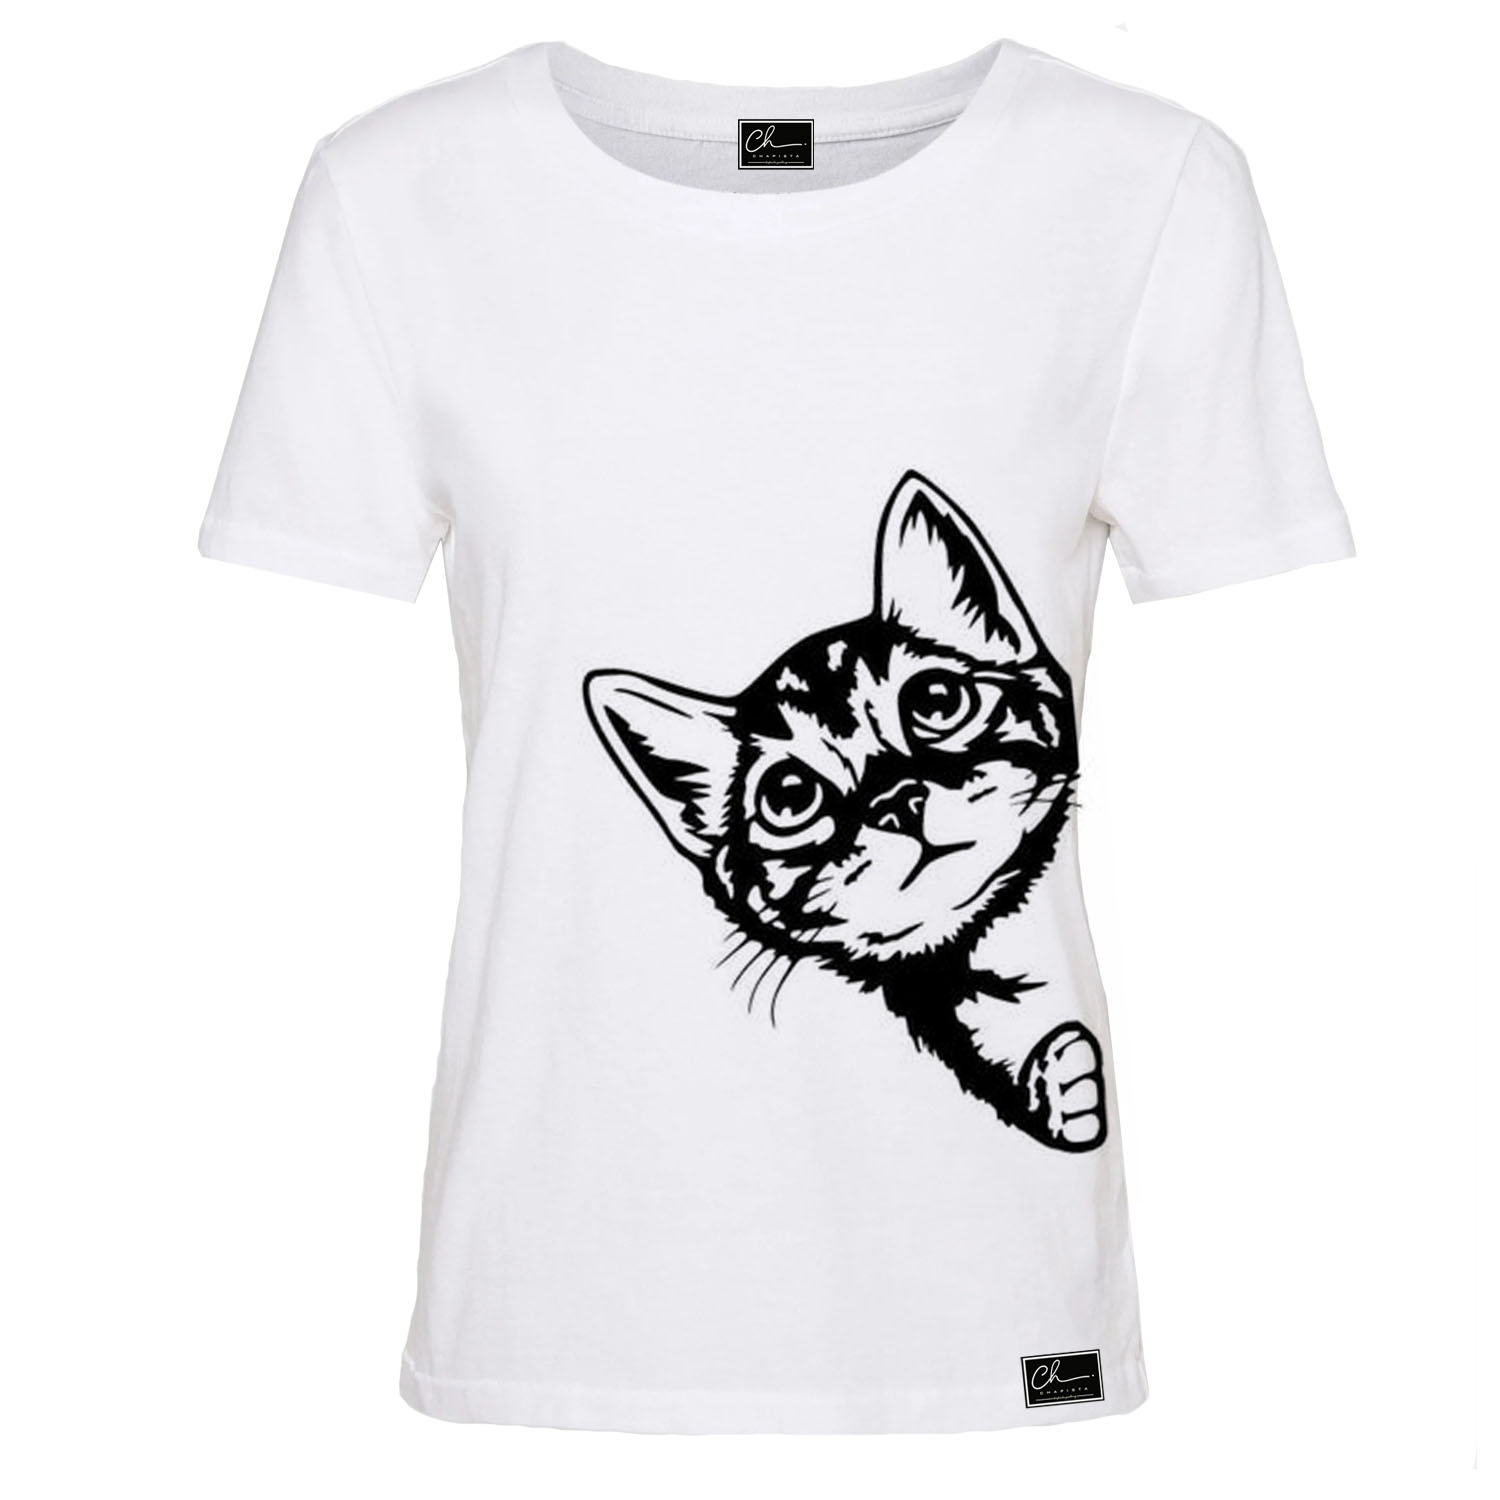 تی شرت آستین کوتاه زنانه مدل گربه کد B121 رنگ سفید